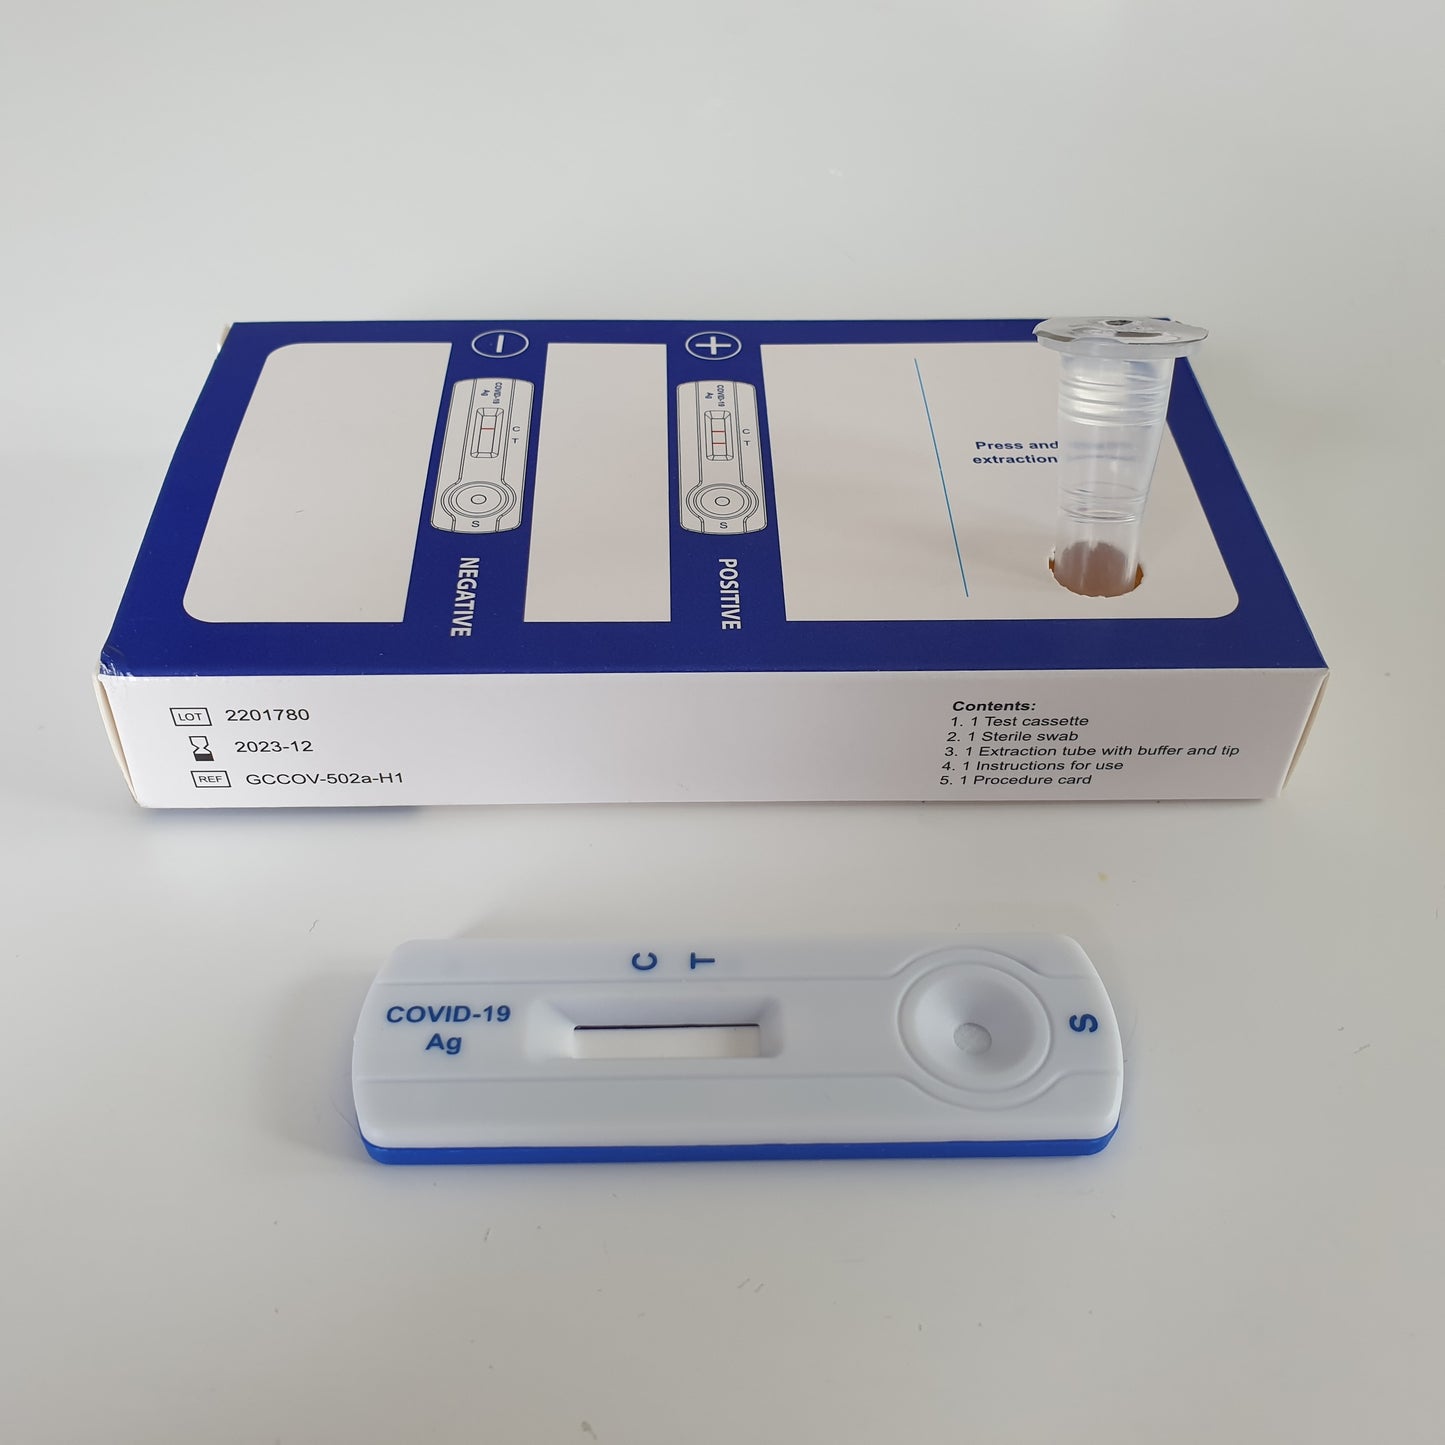 Rapid Antigen Testing Kits (RAT Tests) - single